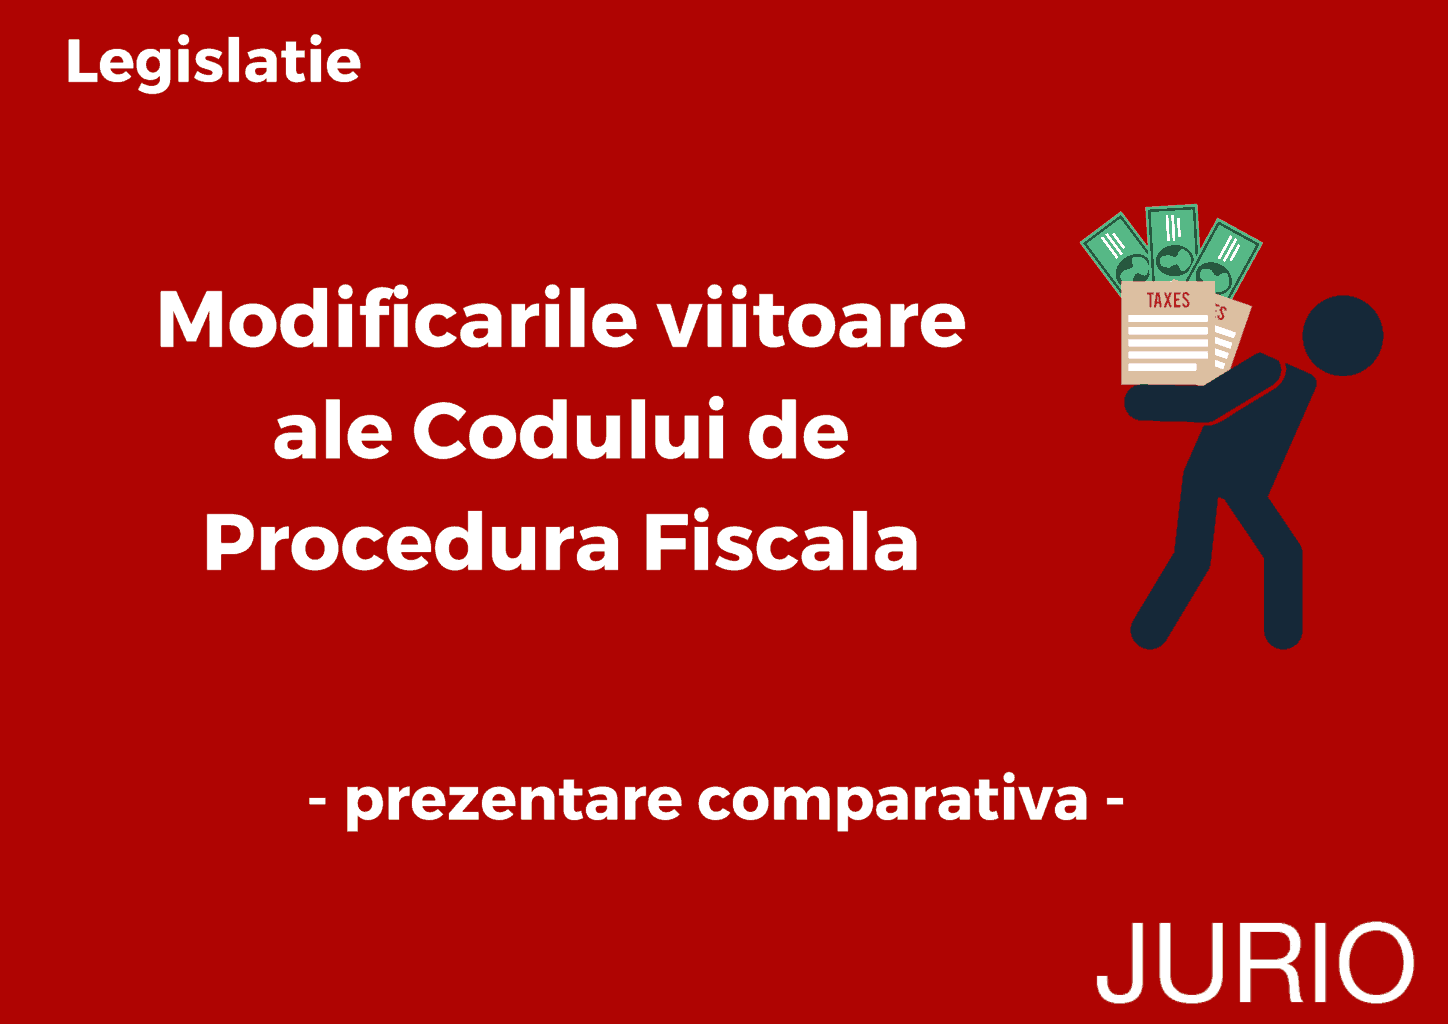 Modificarile viitoare ale Codului de Procedura Fiscala